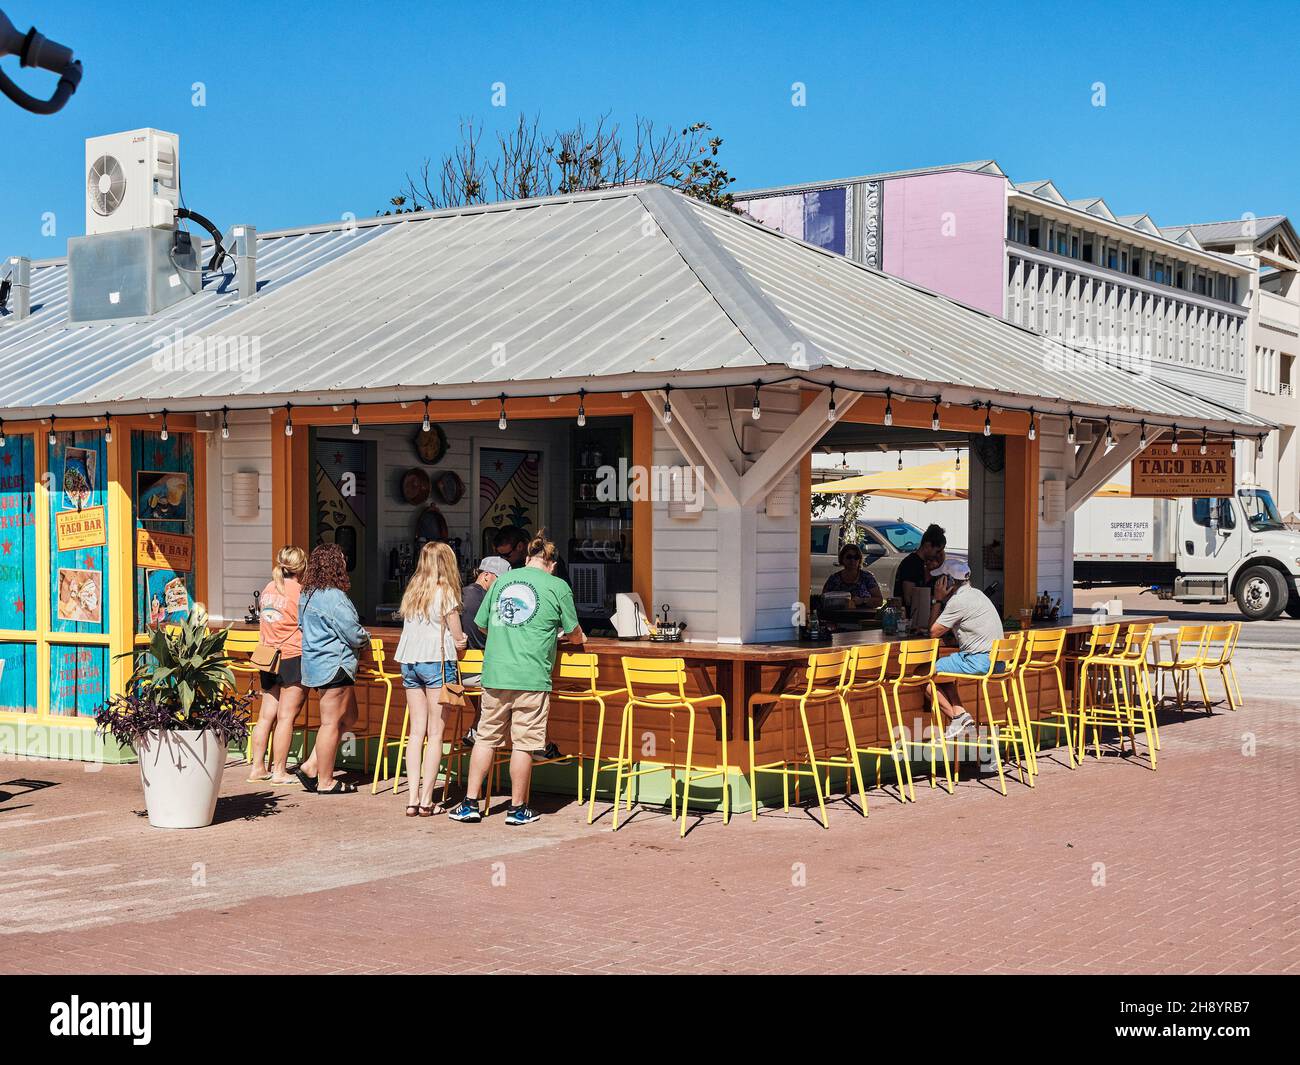 Les personnes qui commandent et mangent dans un bar à tacos extérieur ou un restaurant à tacos dans la station balnéaire de Seaside Florida, États-Unis. Banque D'Images